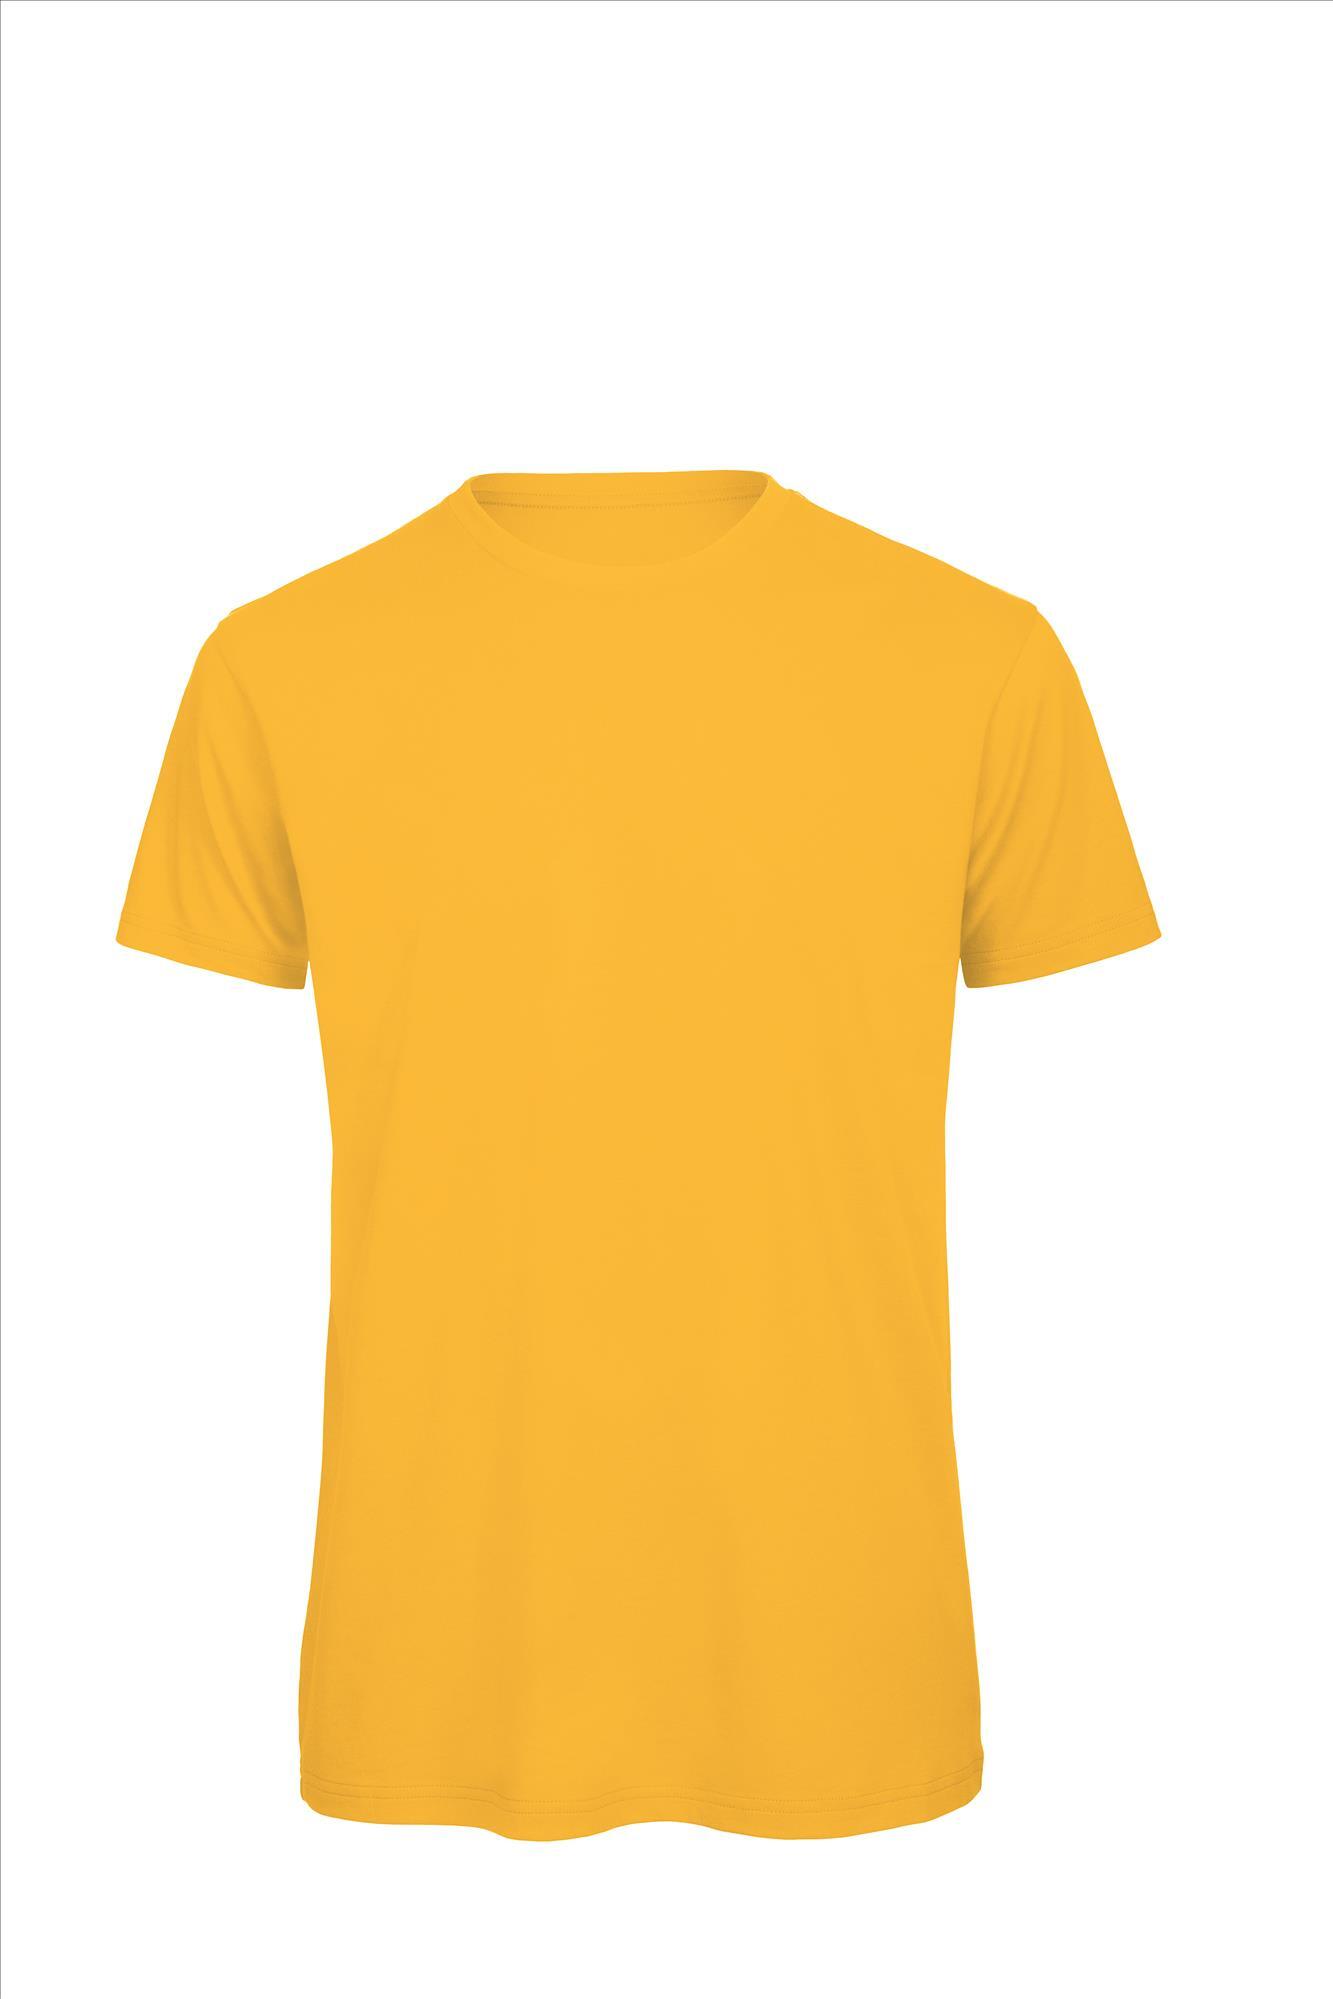 Heren T-shirt goud te personaliseren bedrukbaar duurzaam shirt